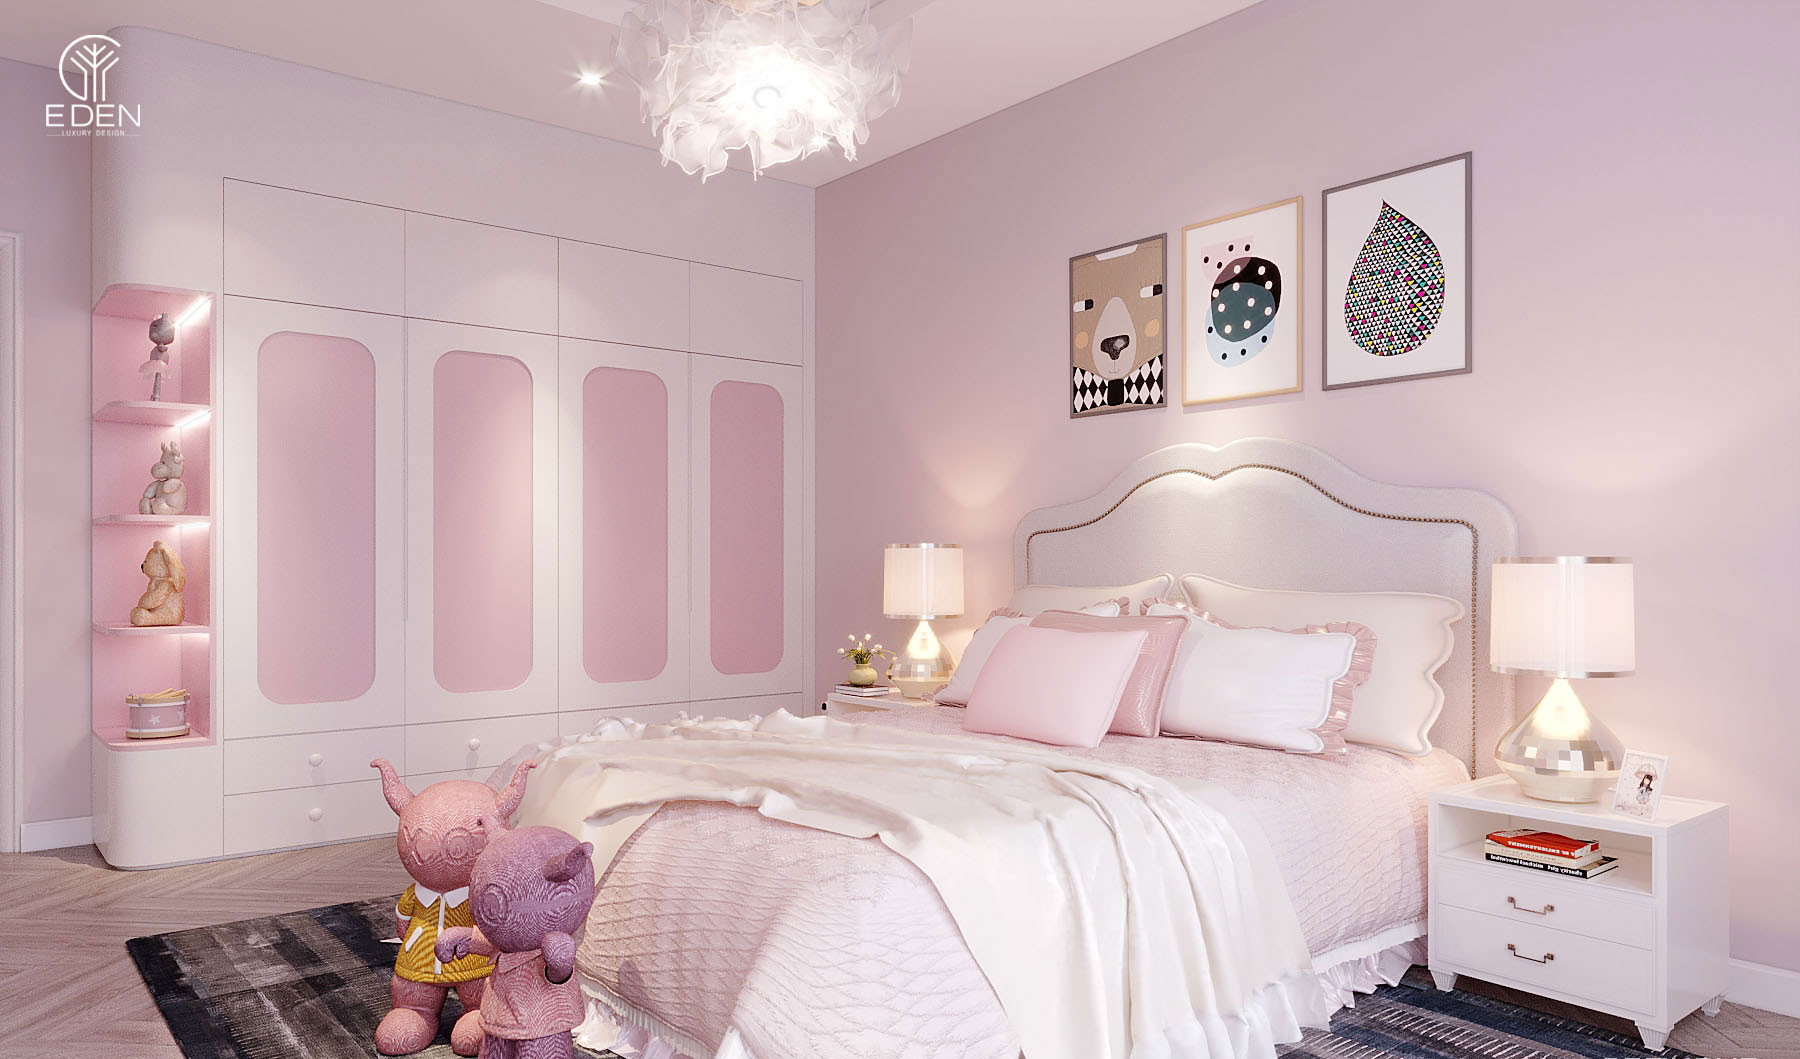 Thiết kế phòng ngủ màu hồng phấn nhẹ cho các cô gái hình 5 